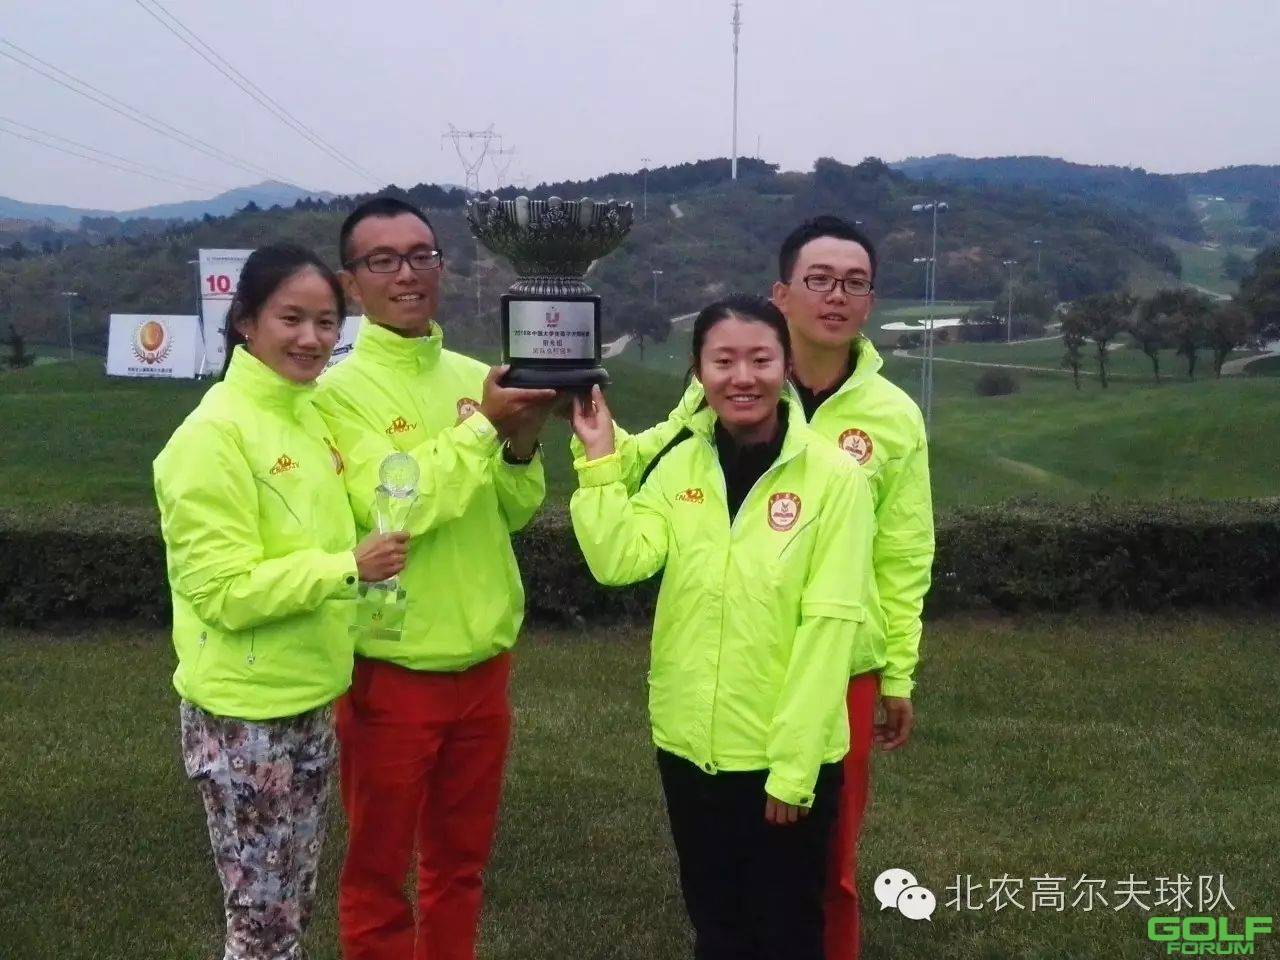 北京农学院高尔夫球队蝉联2016年全国大学生高尔夫球锦标赛冠军 ...